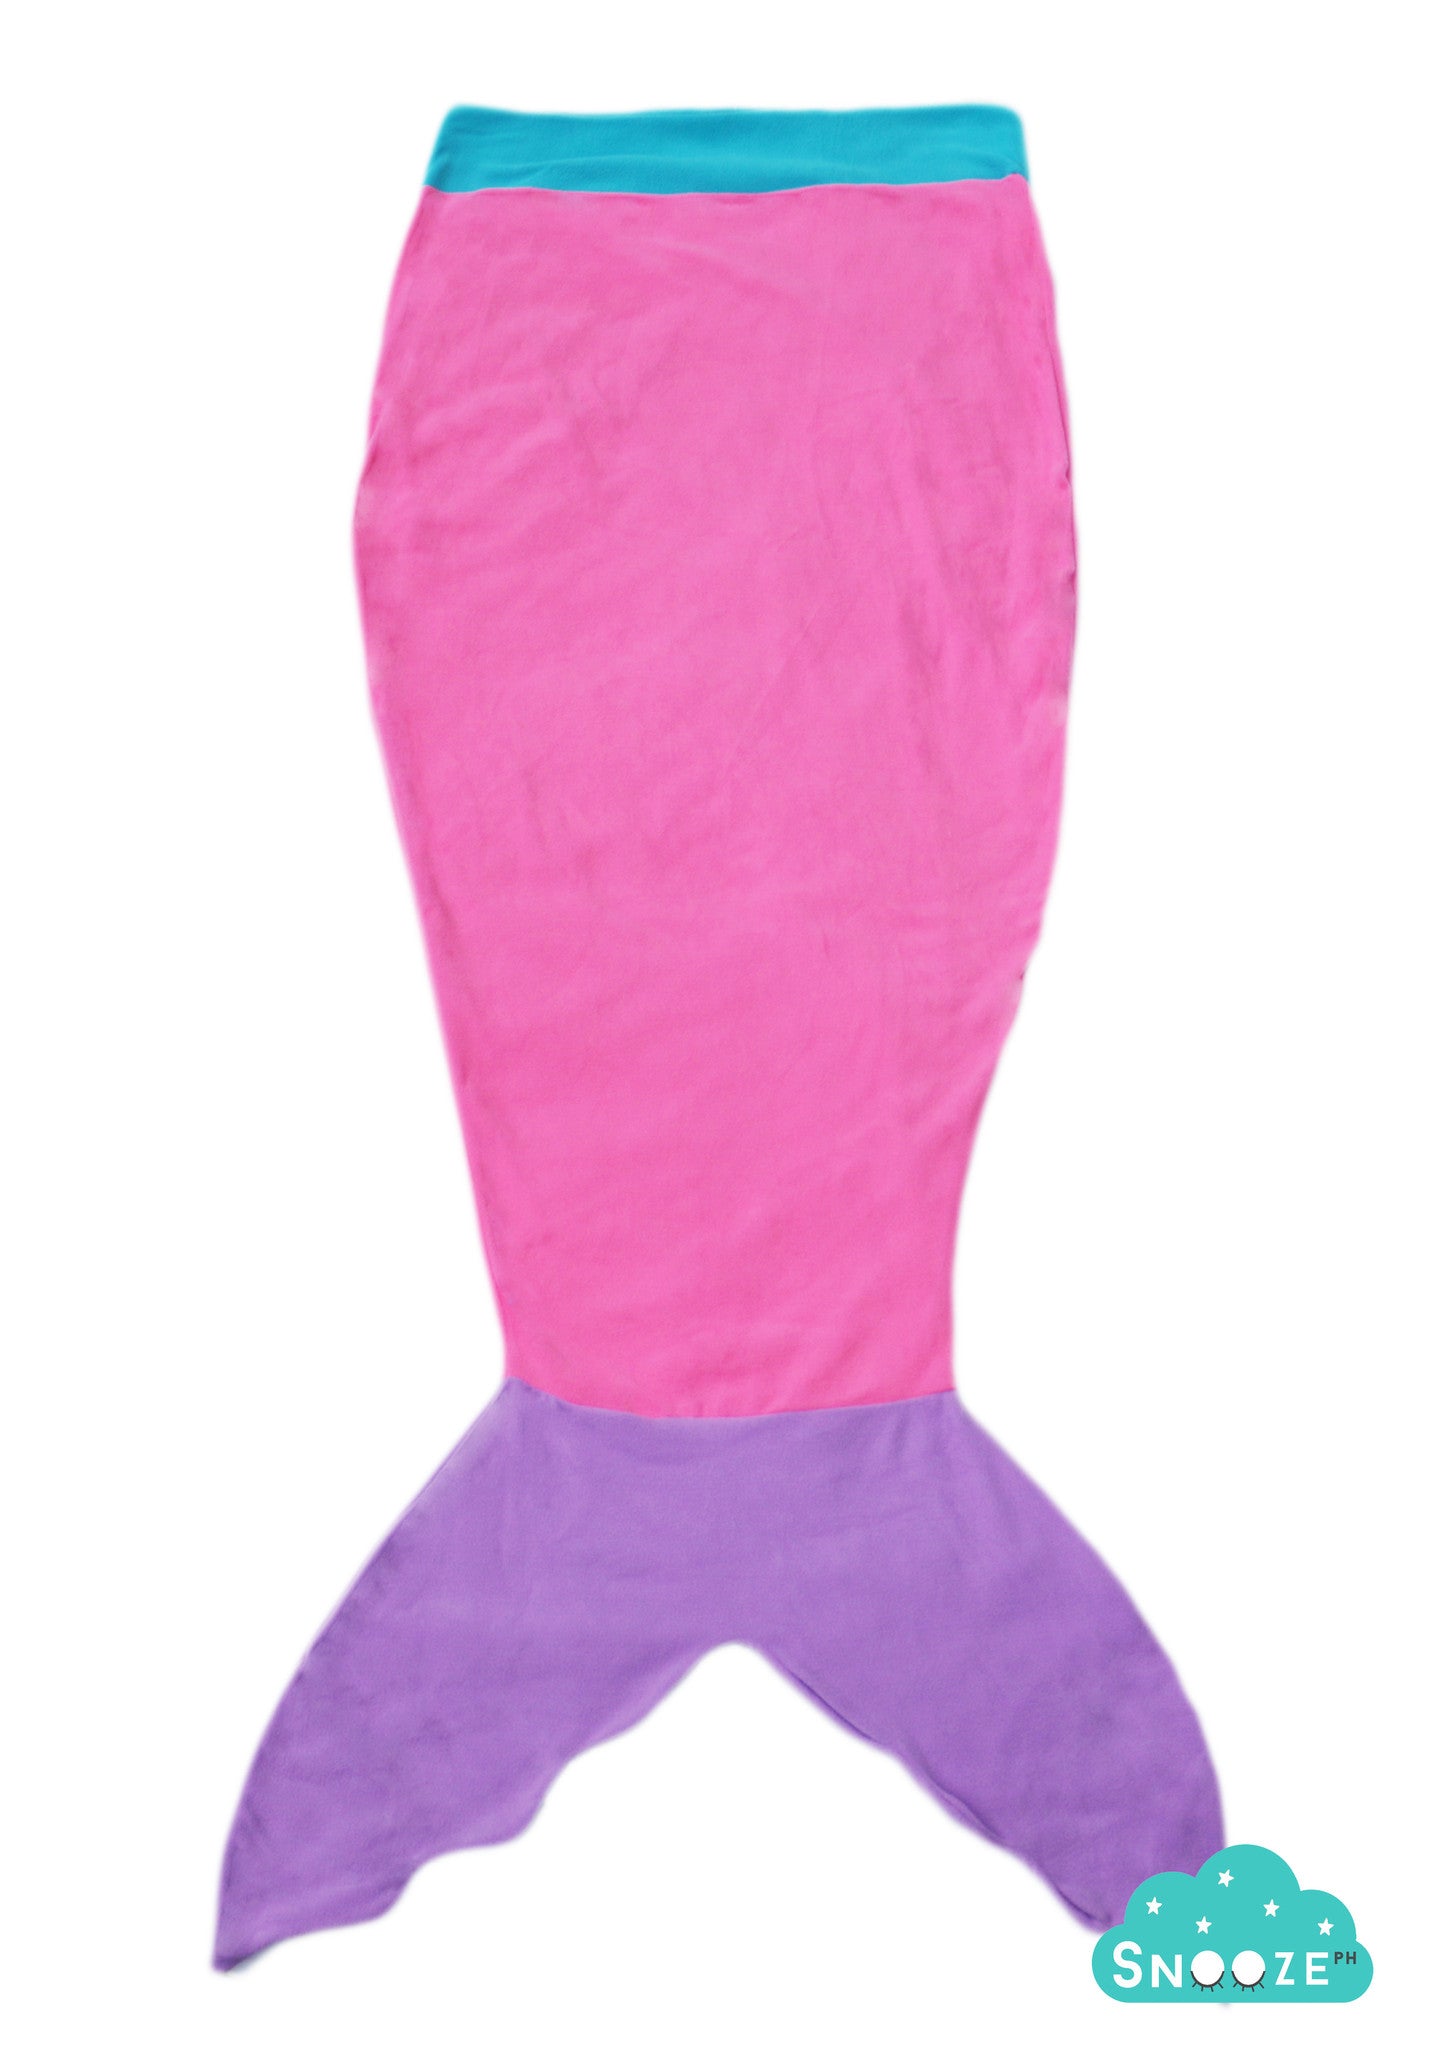 Pink Mermaid Blanket